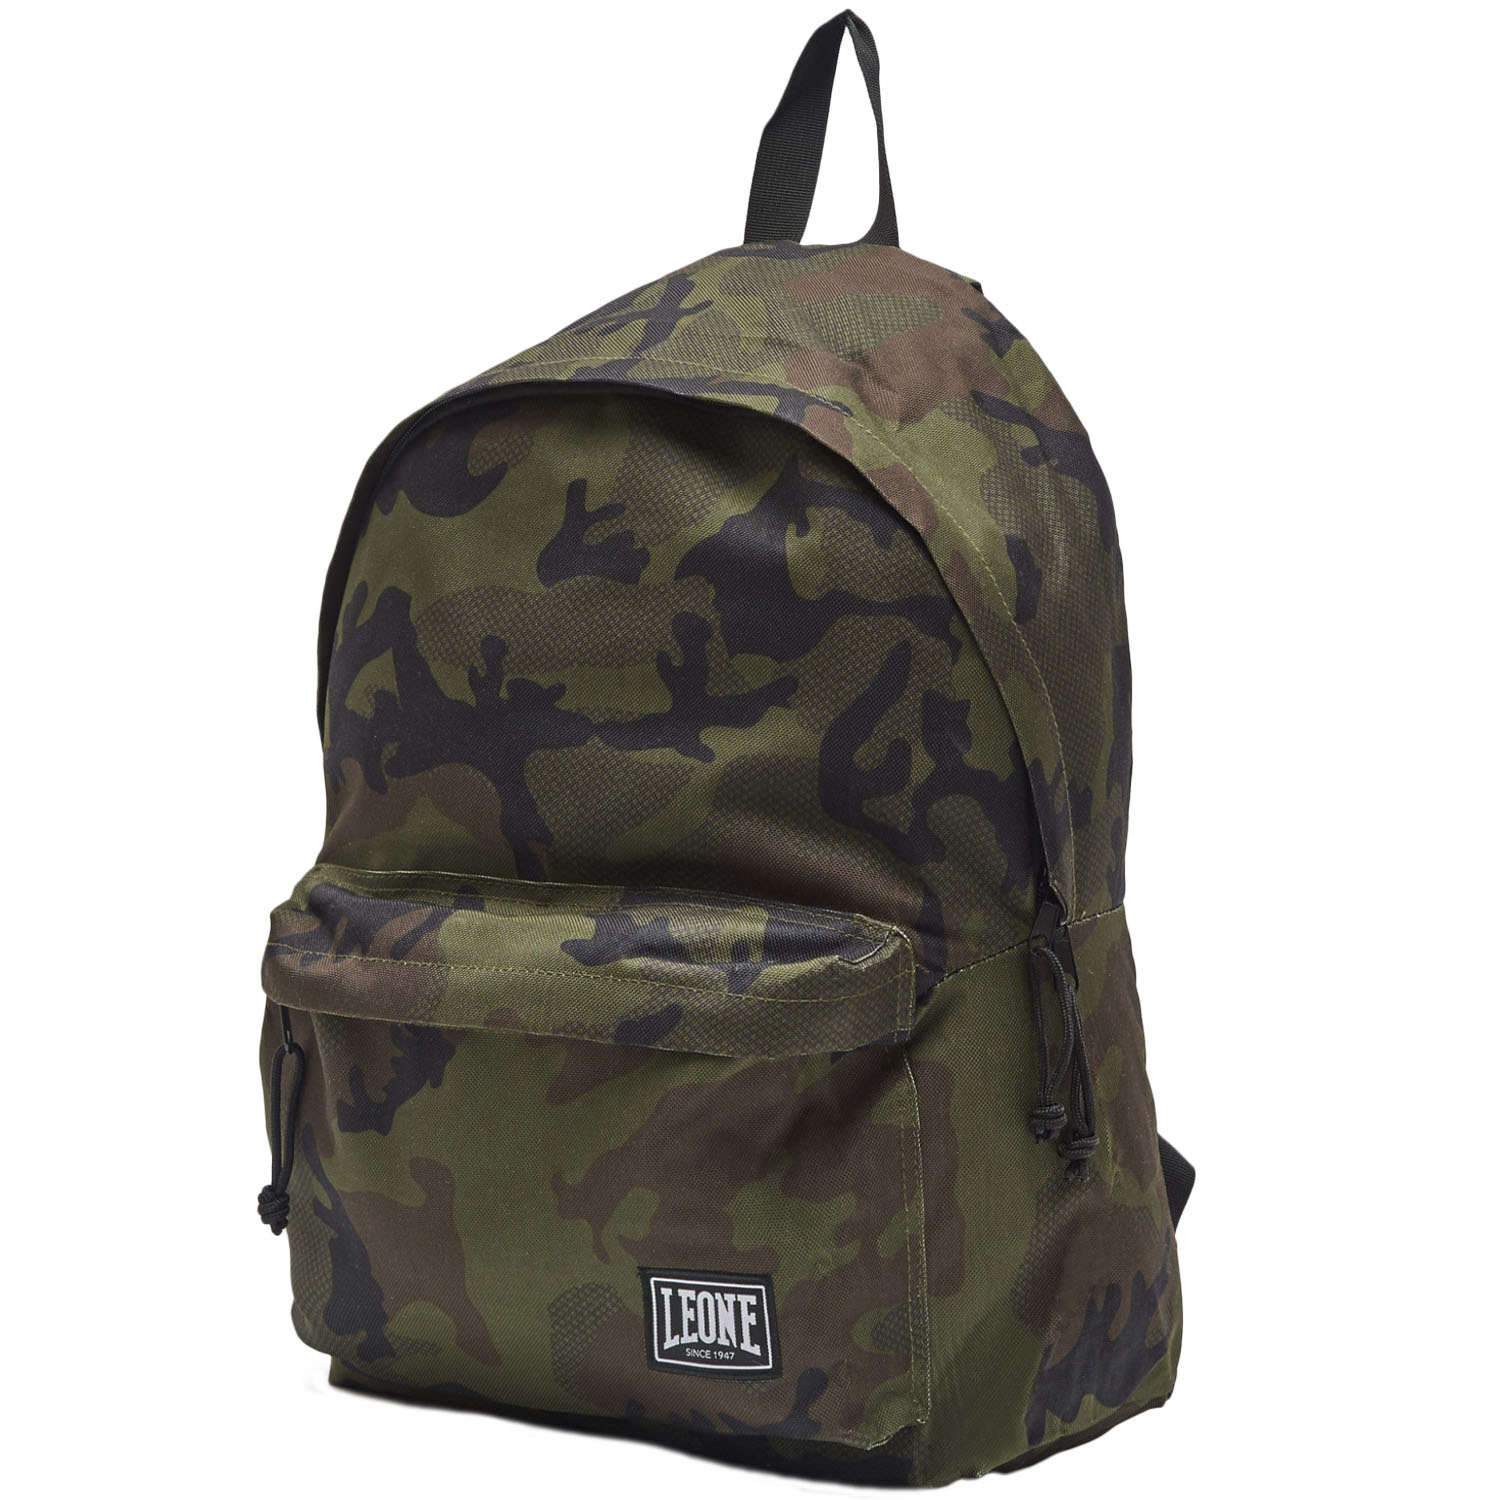 LEONE Backpack, AC951, camo-green